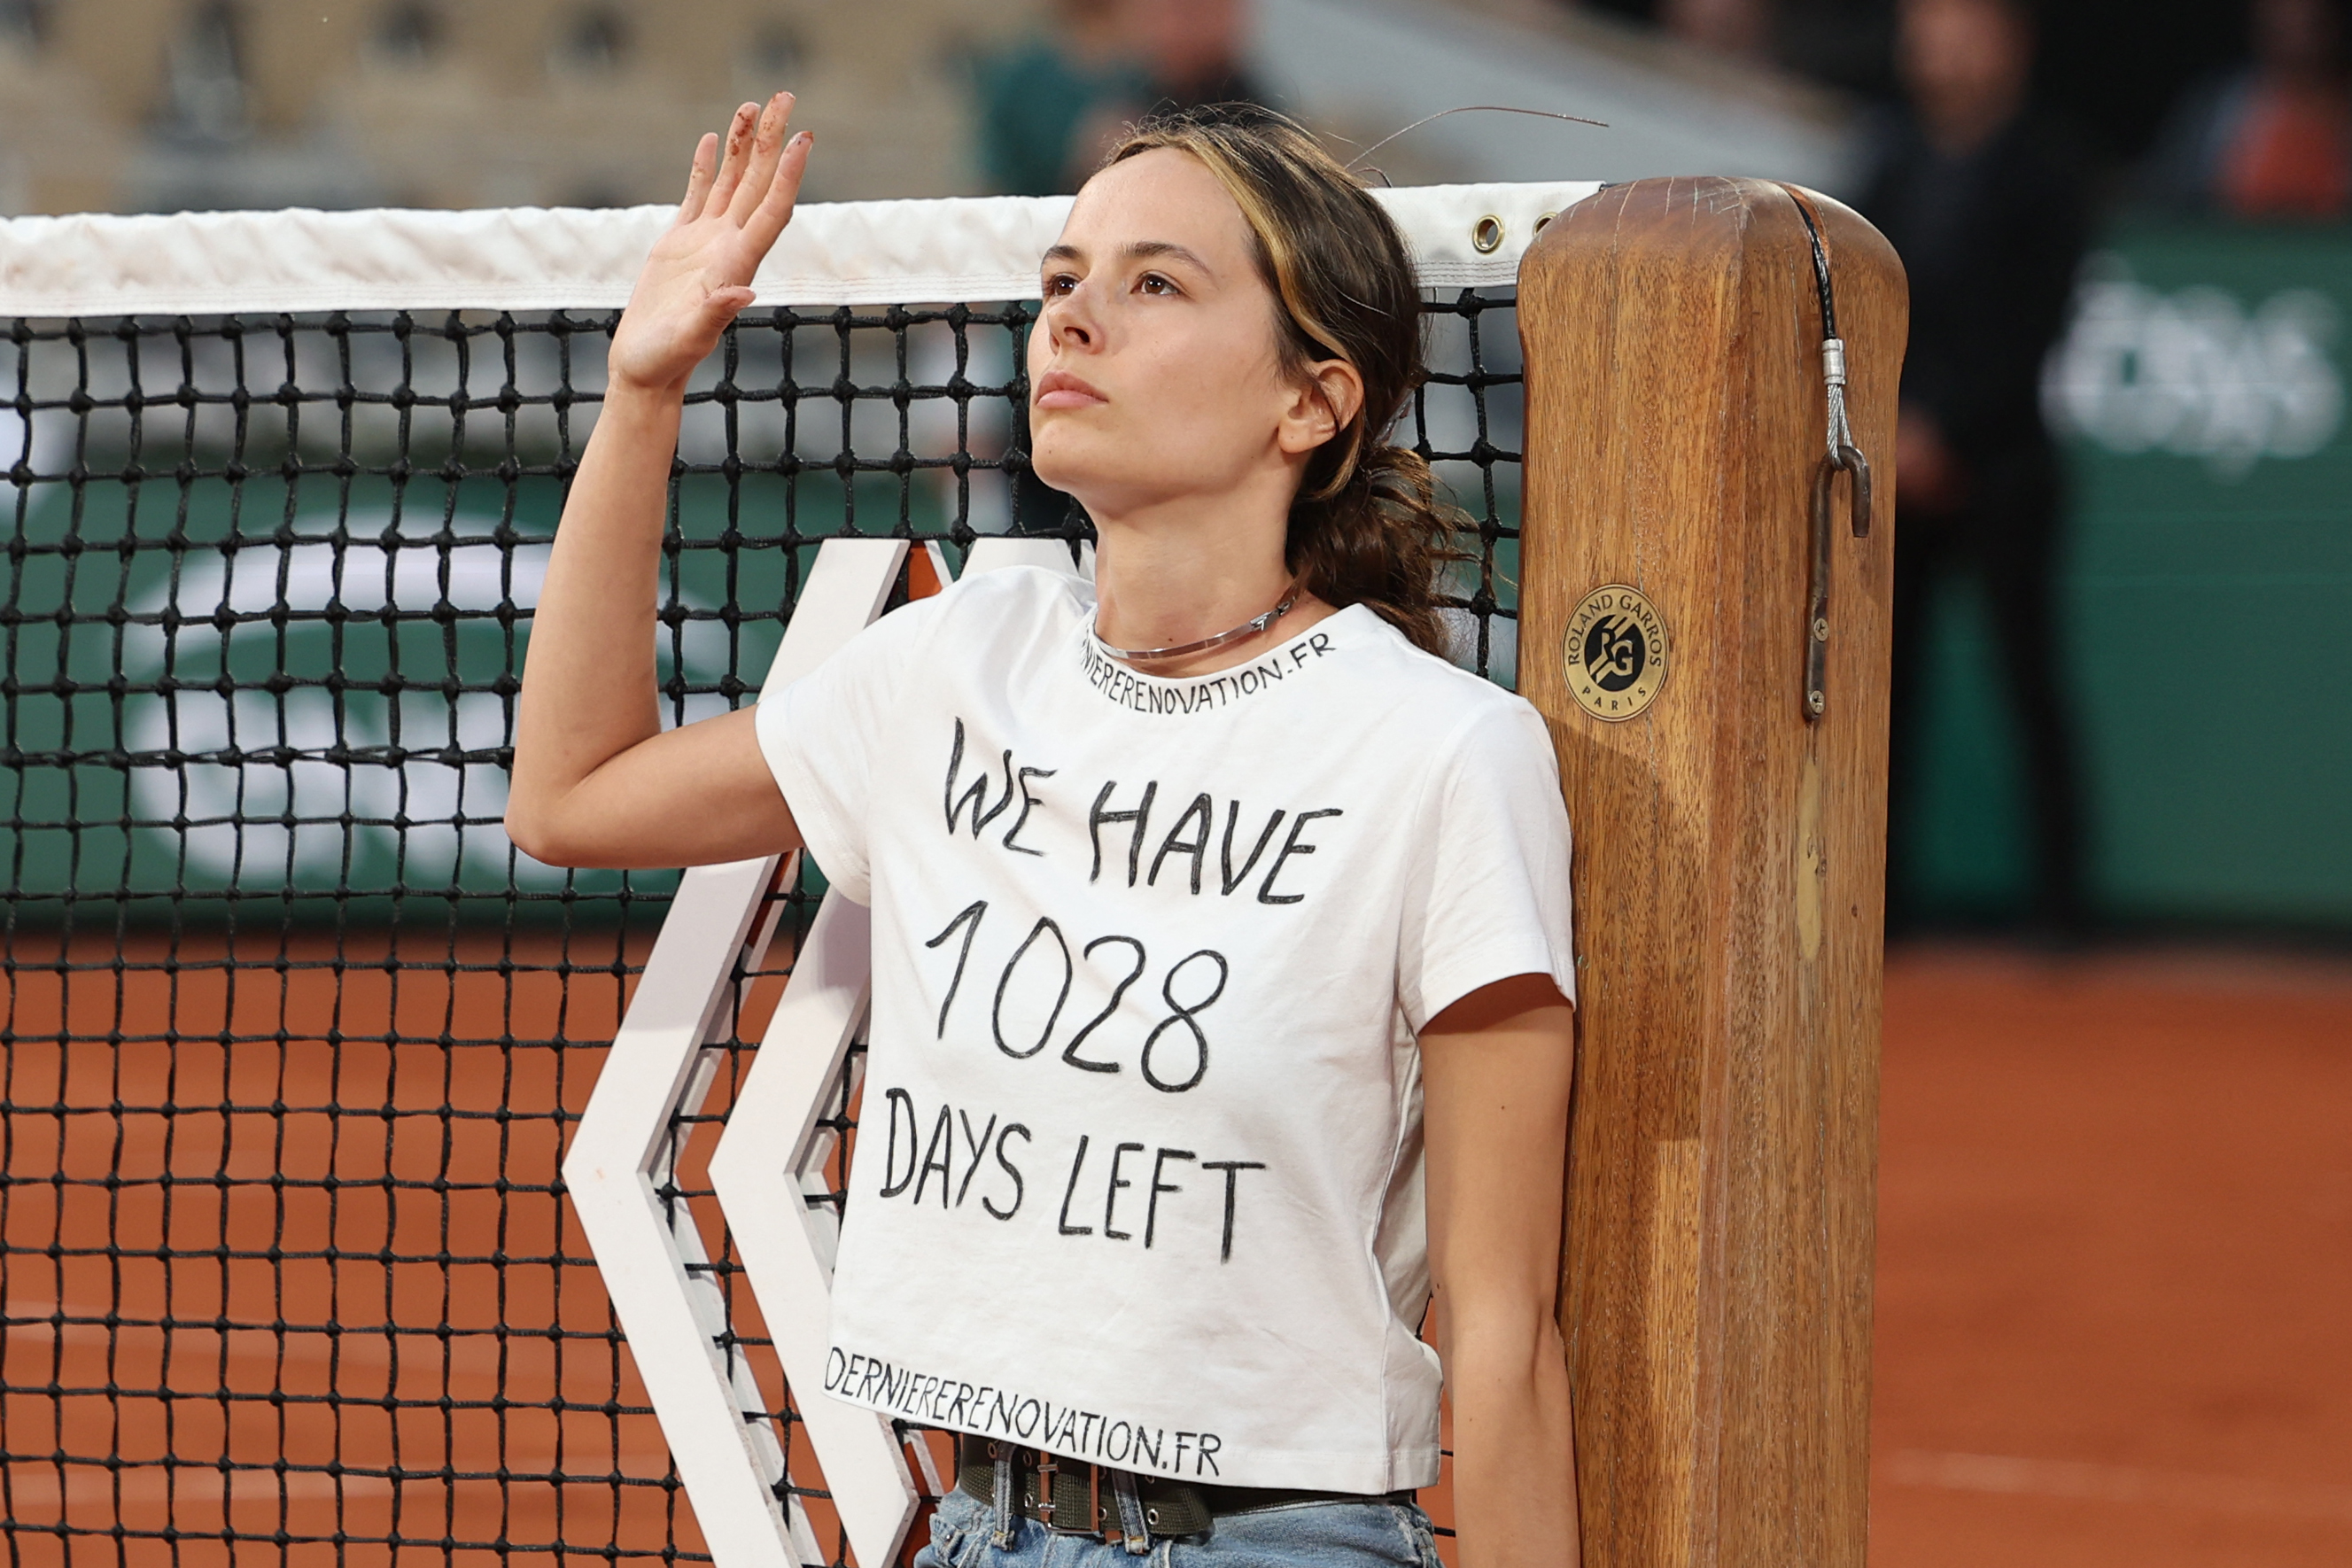 Activista se encadenó a la red de la cancha e interrumpió la segunda semifinal de Roland Garros (FOTOS)